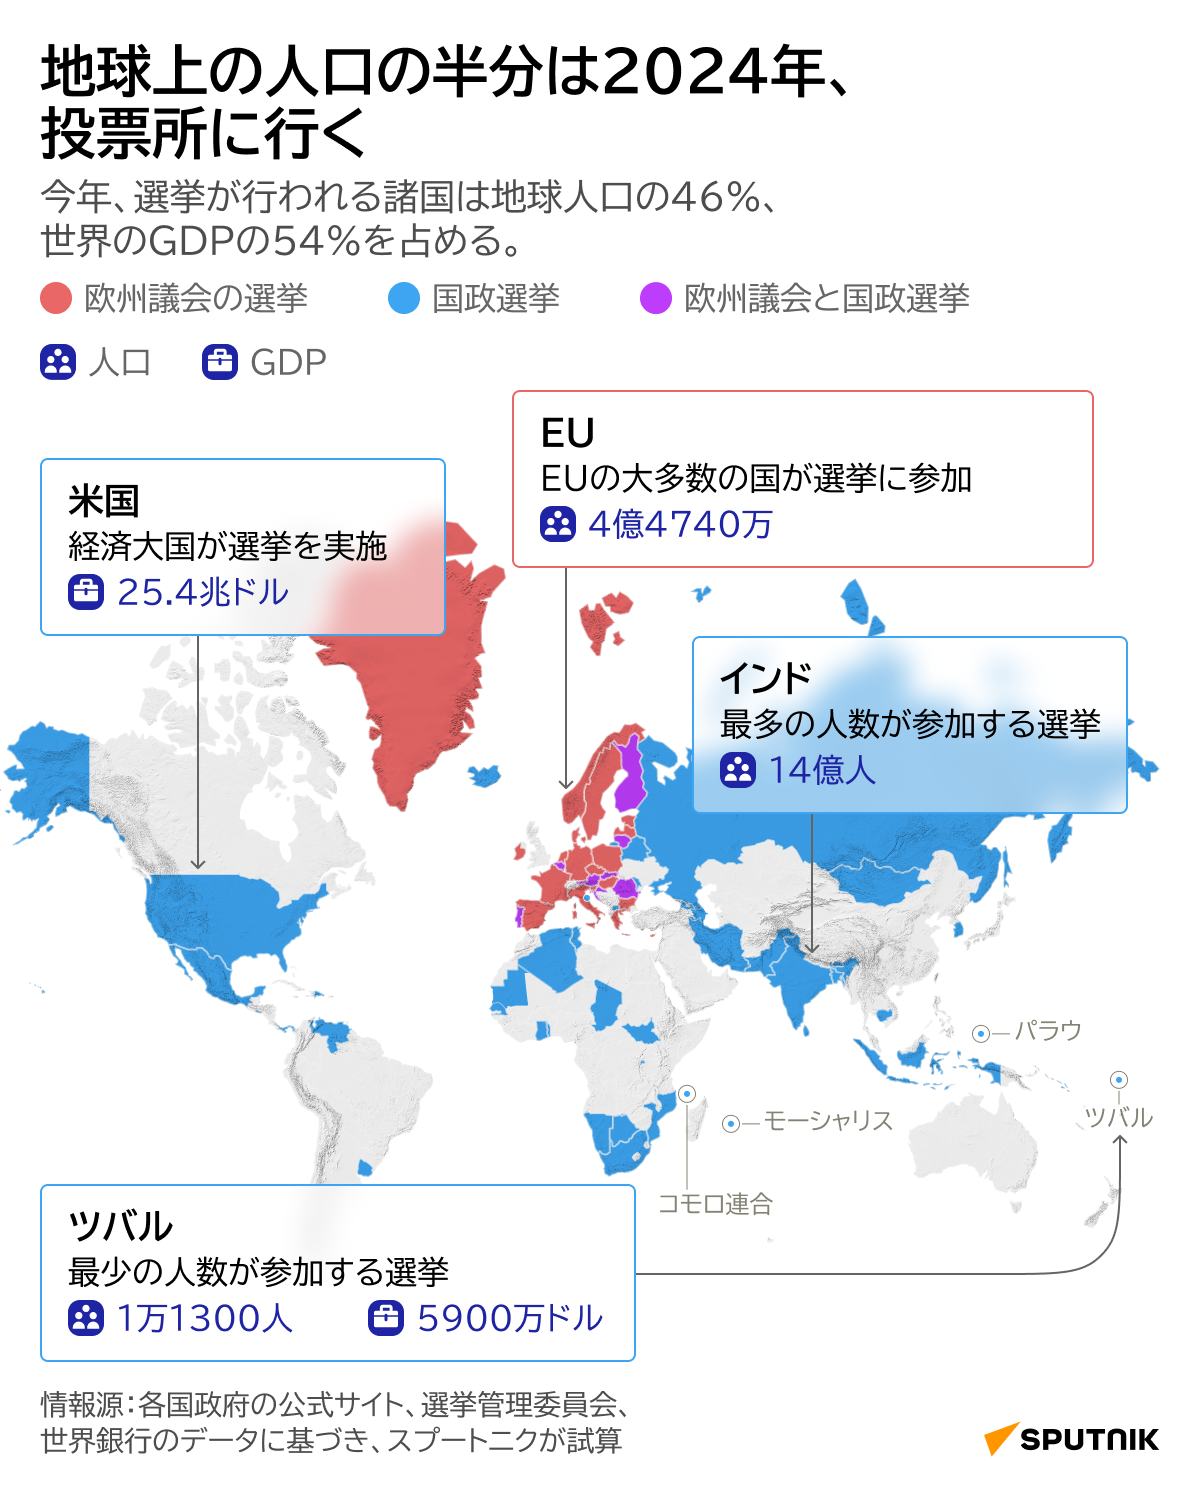 2024年に世界で実施される選挙-1 - Sputnik 日本